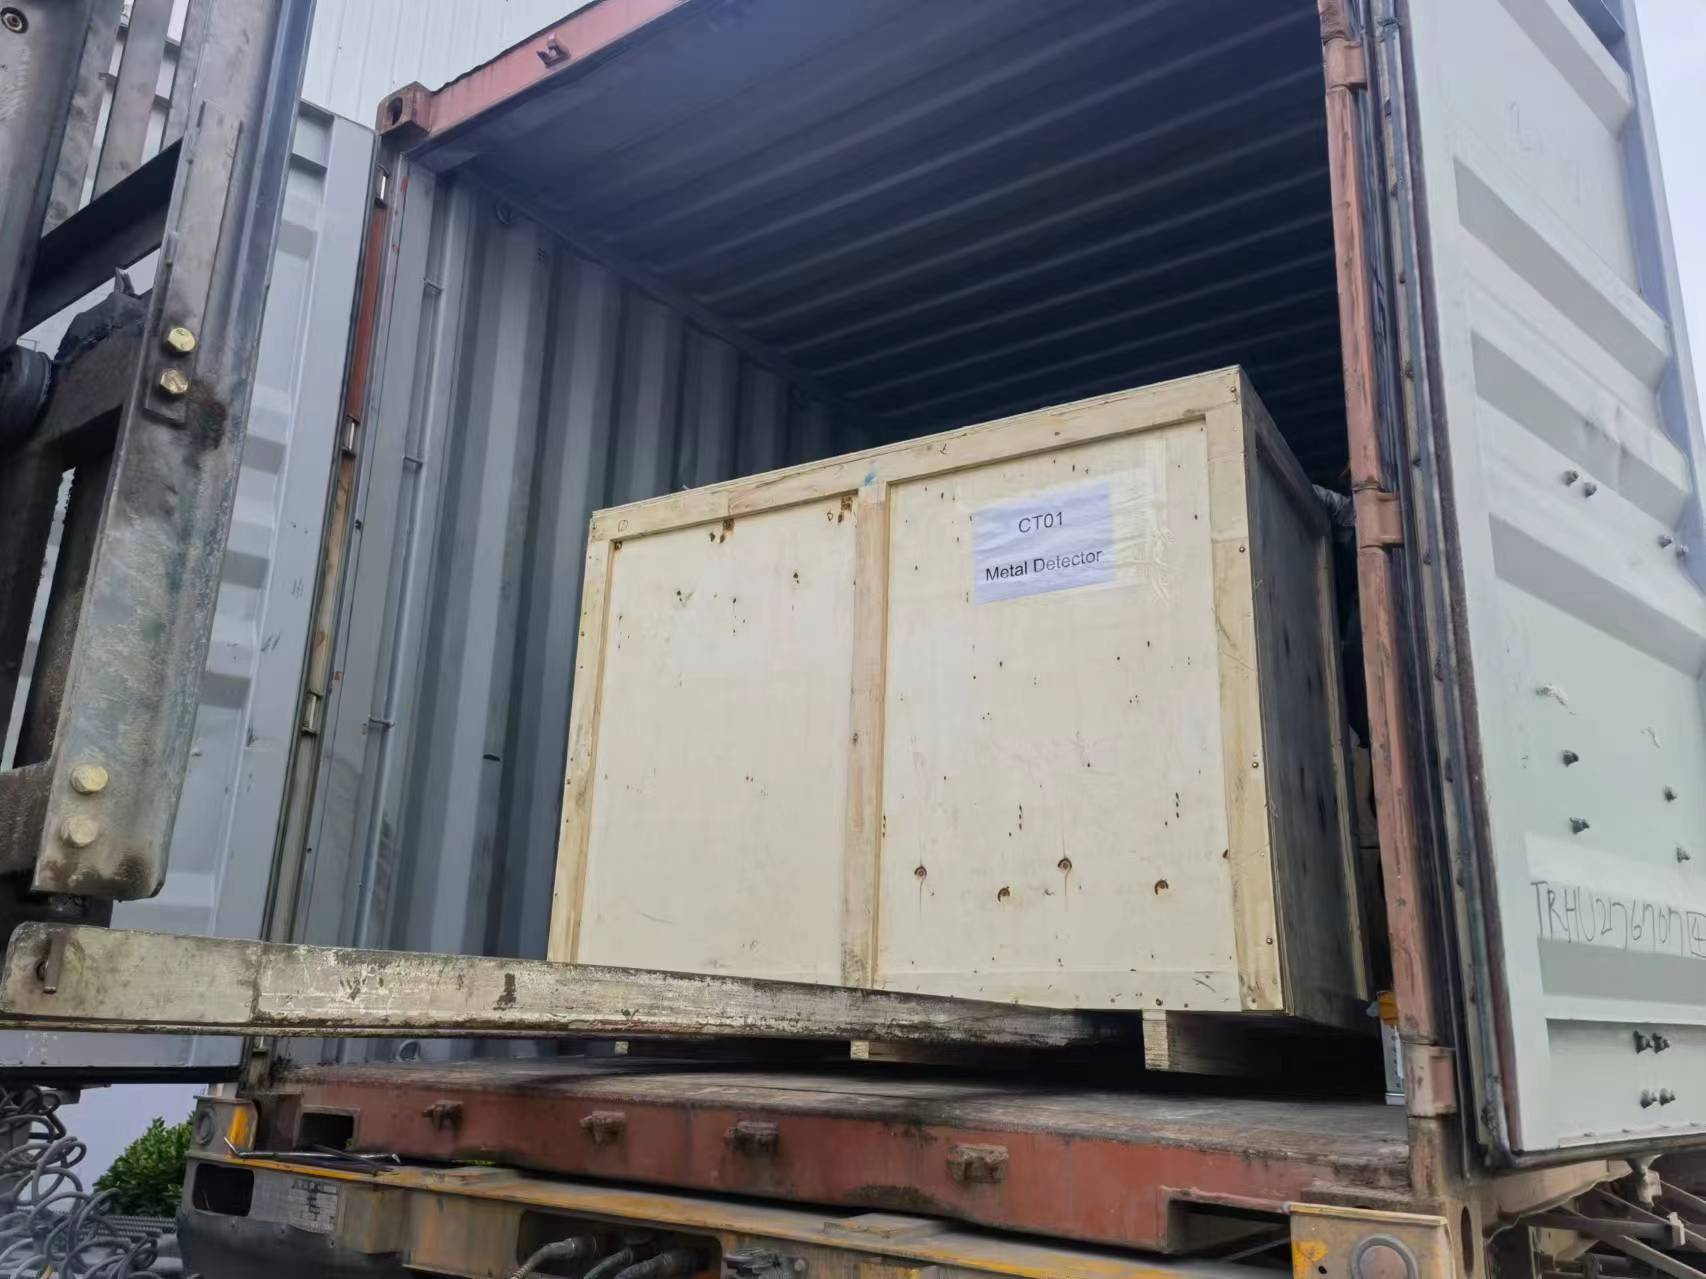 Tunisian Shipment